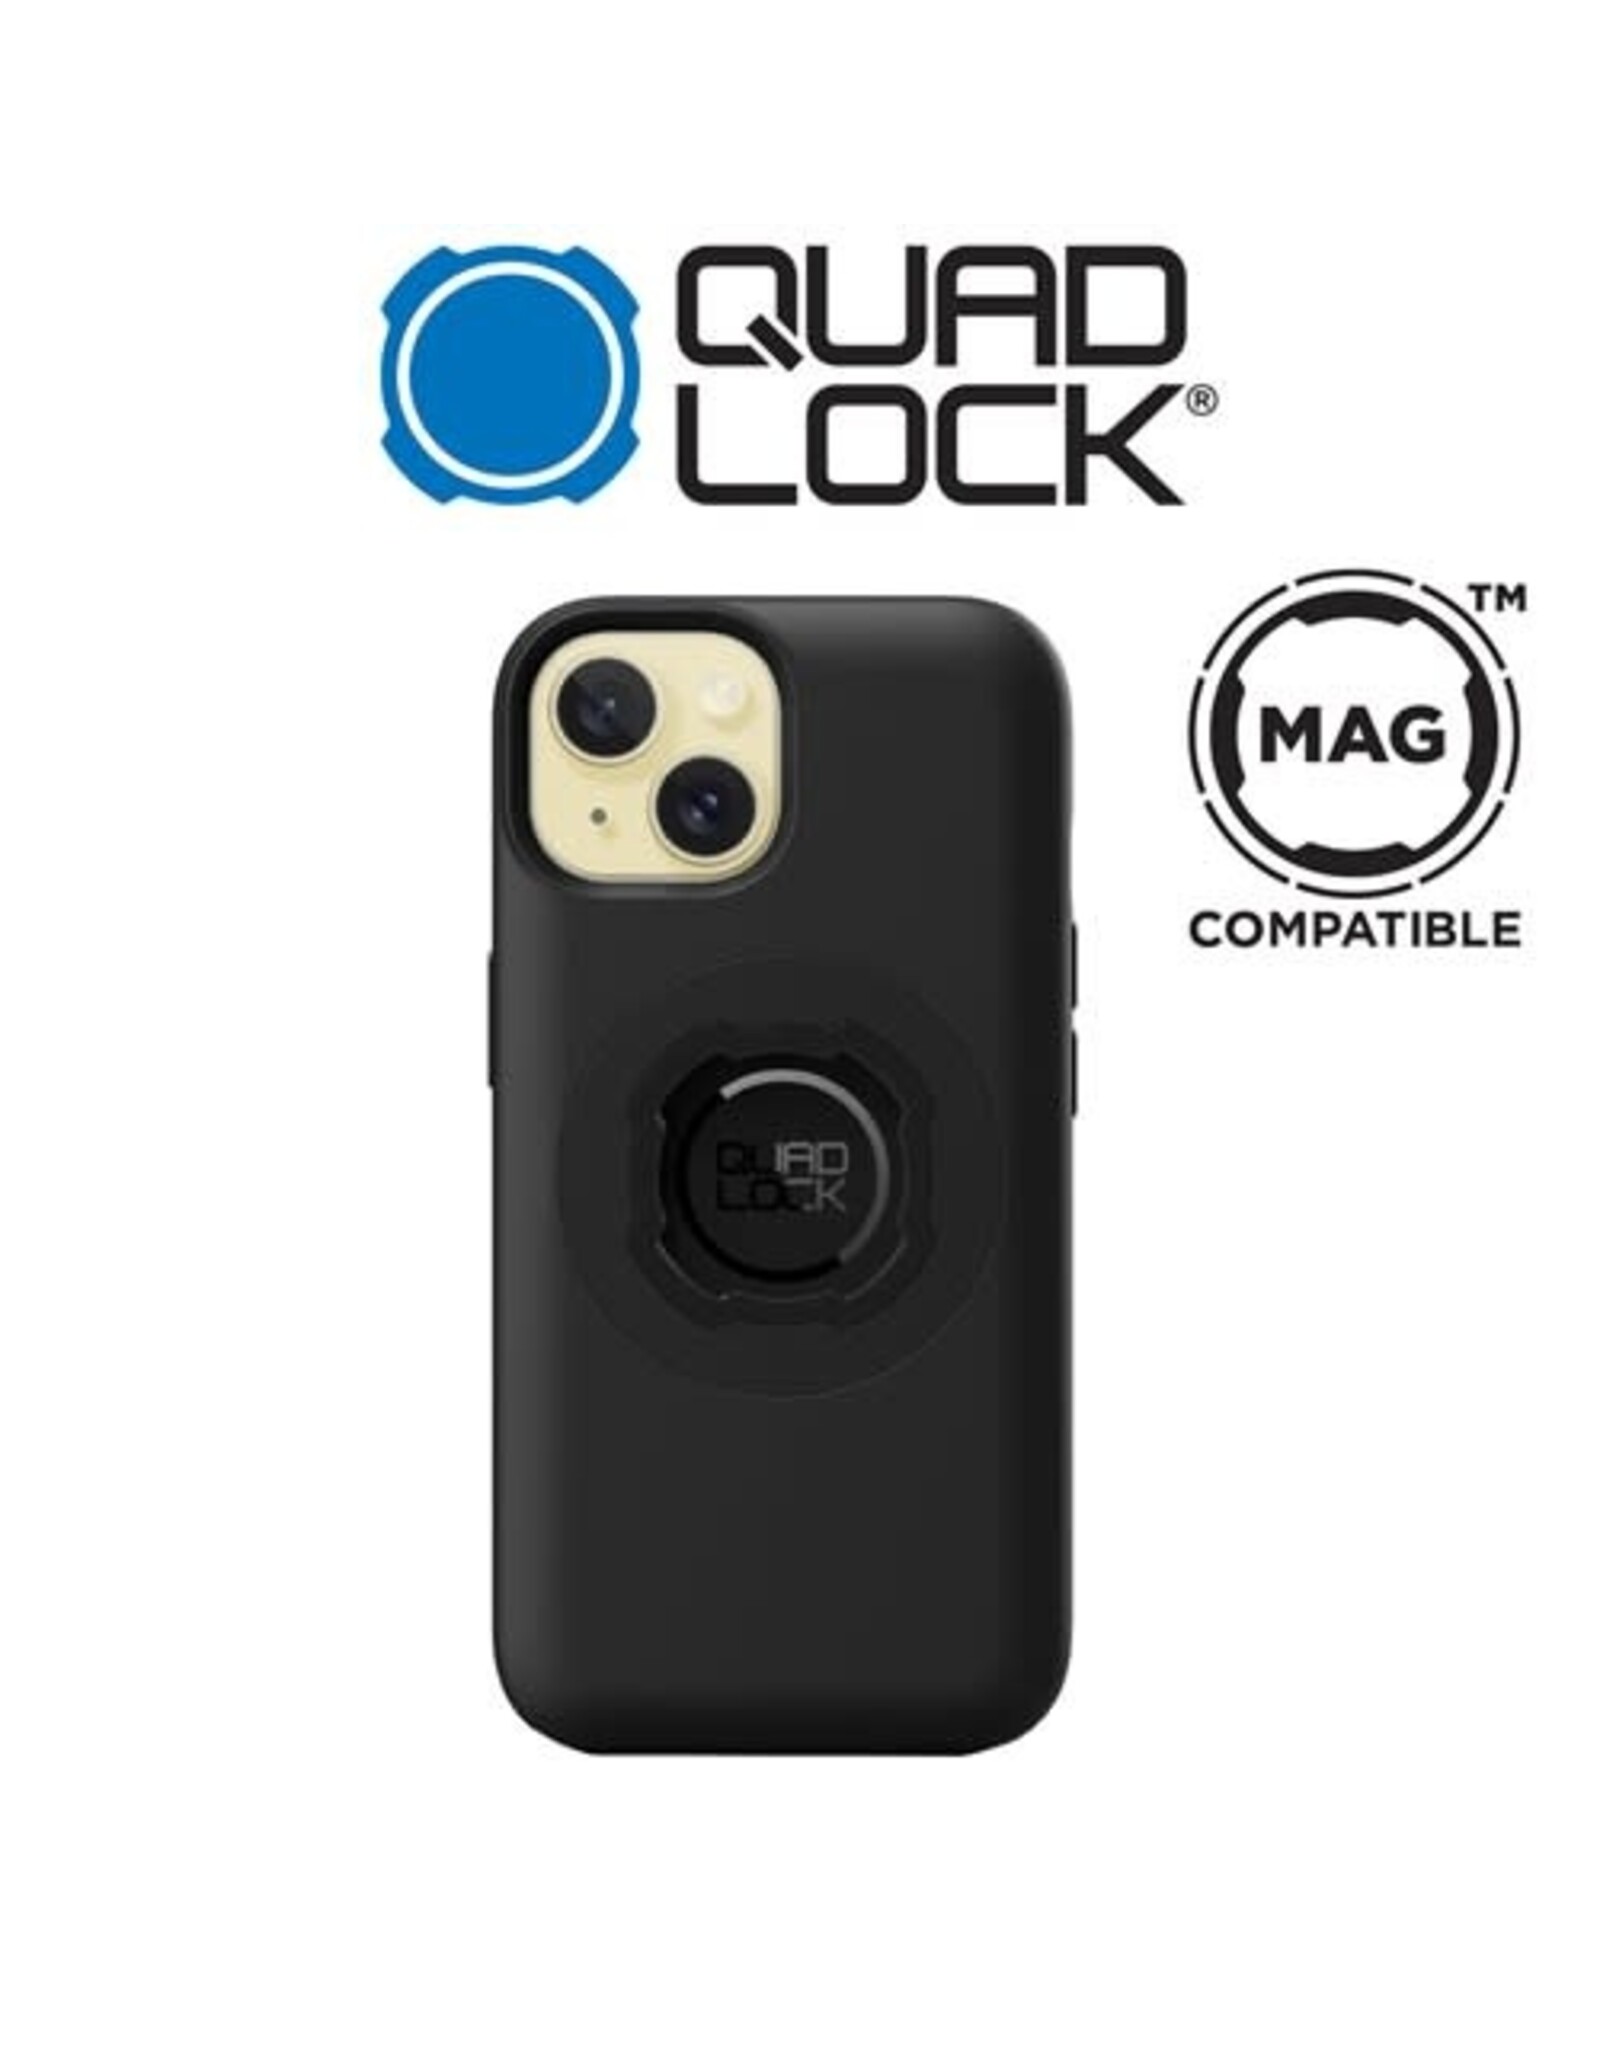 QUAD LOCK QUAD LOCK MAG FOR iPHONE 15 6.1" PHONE CASE